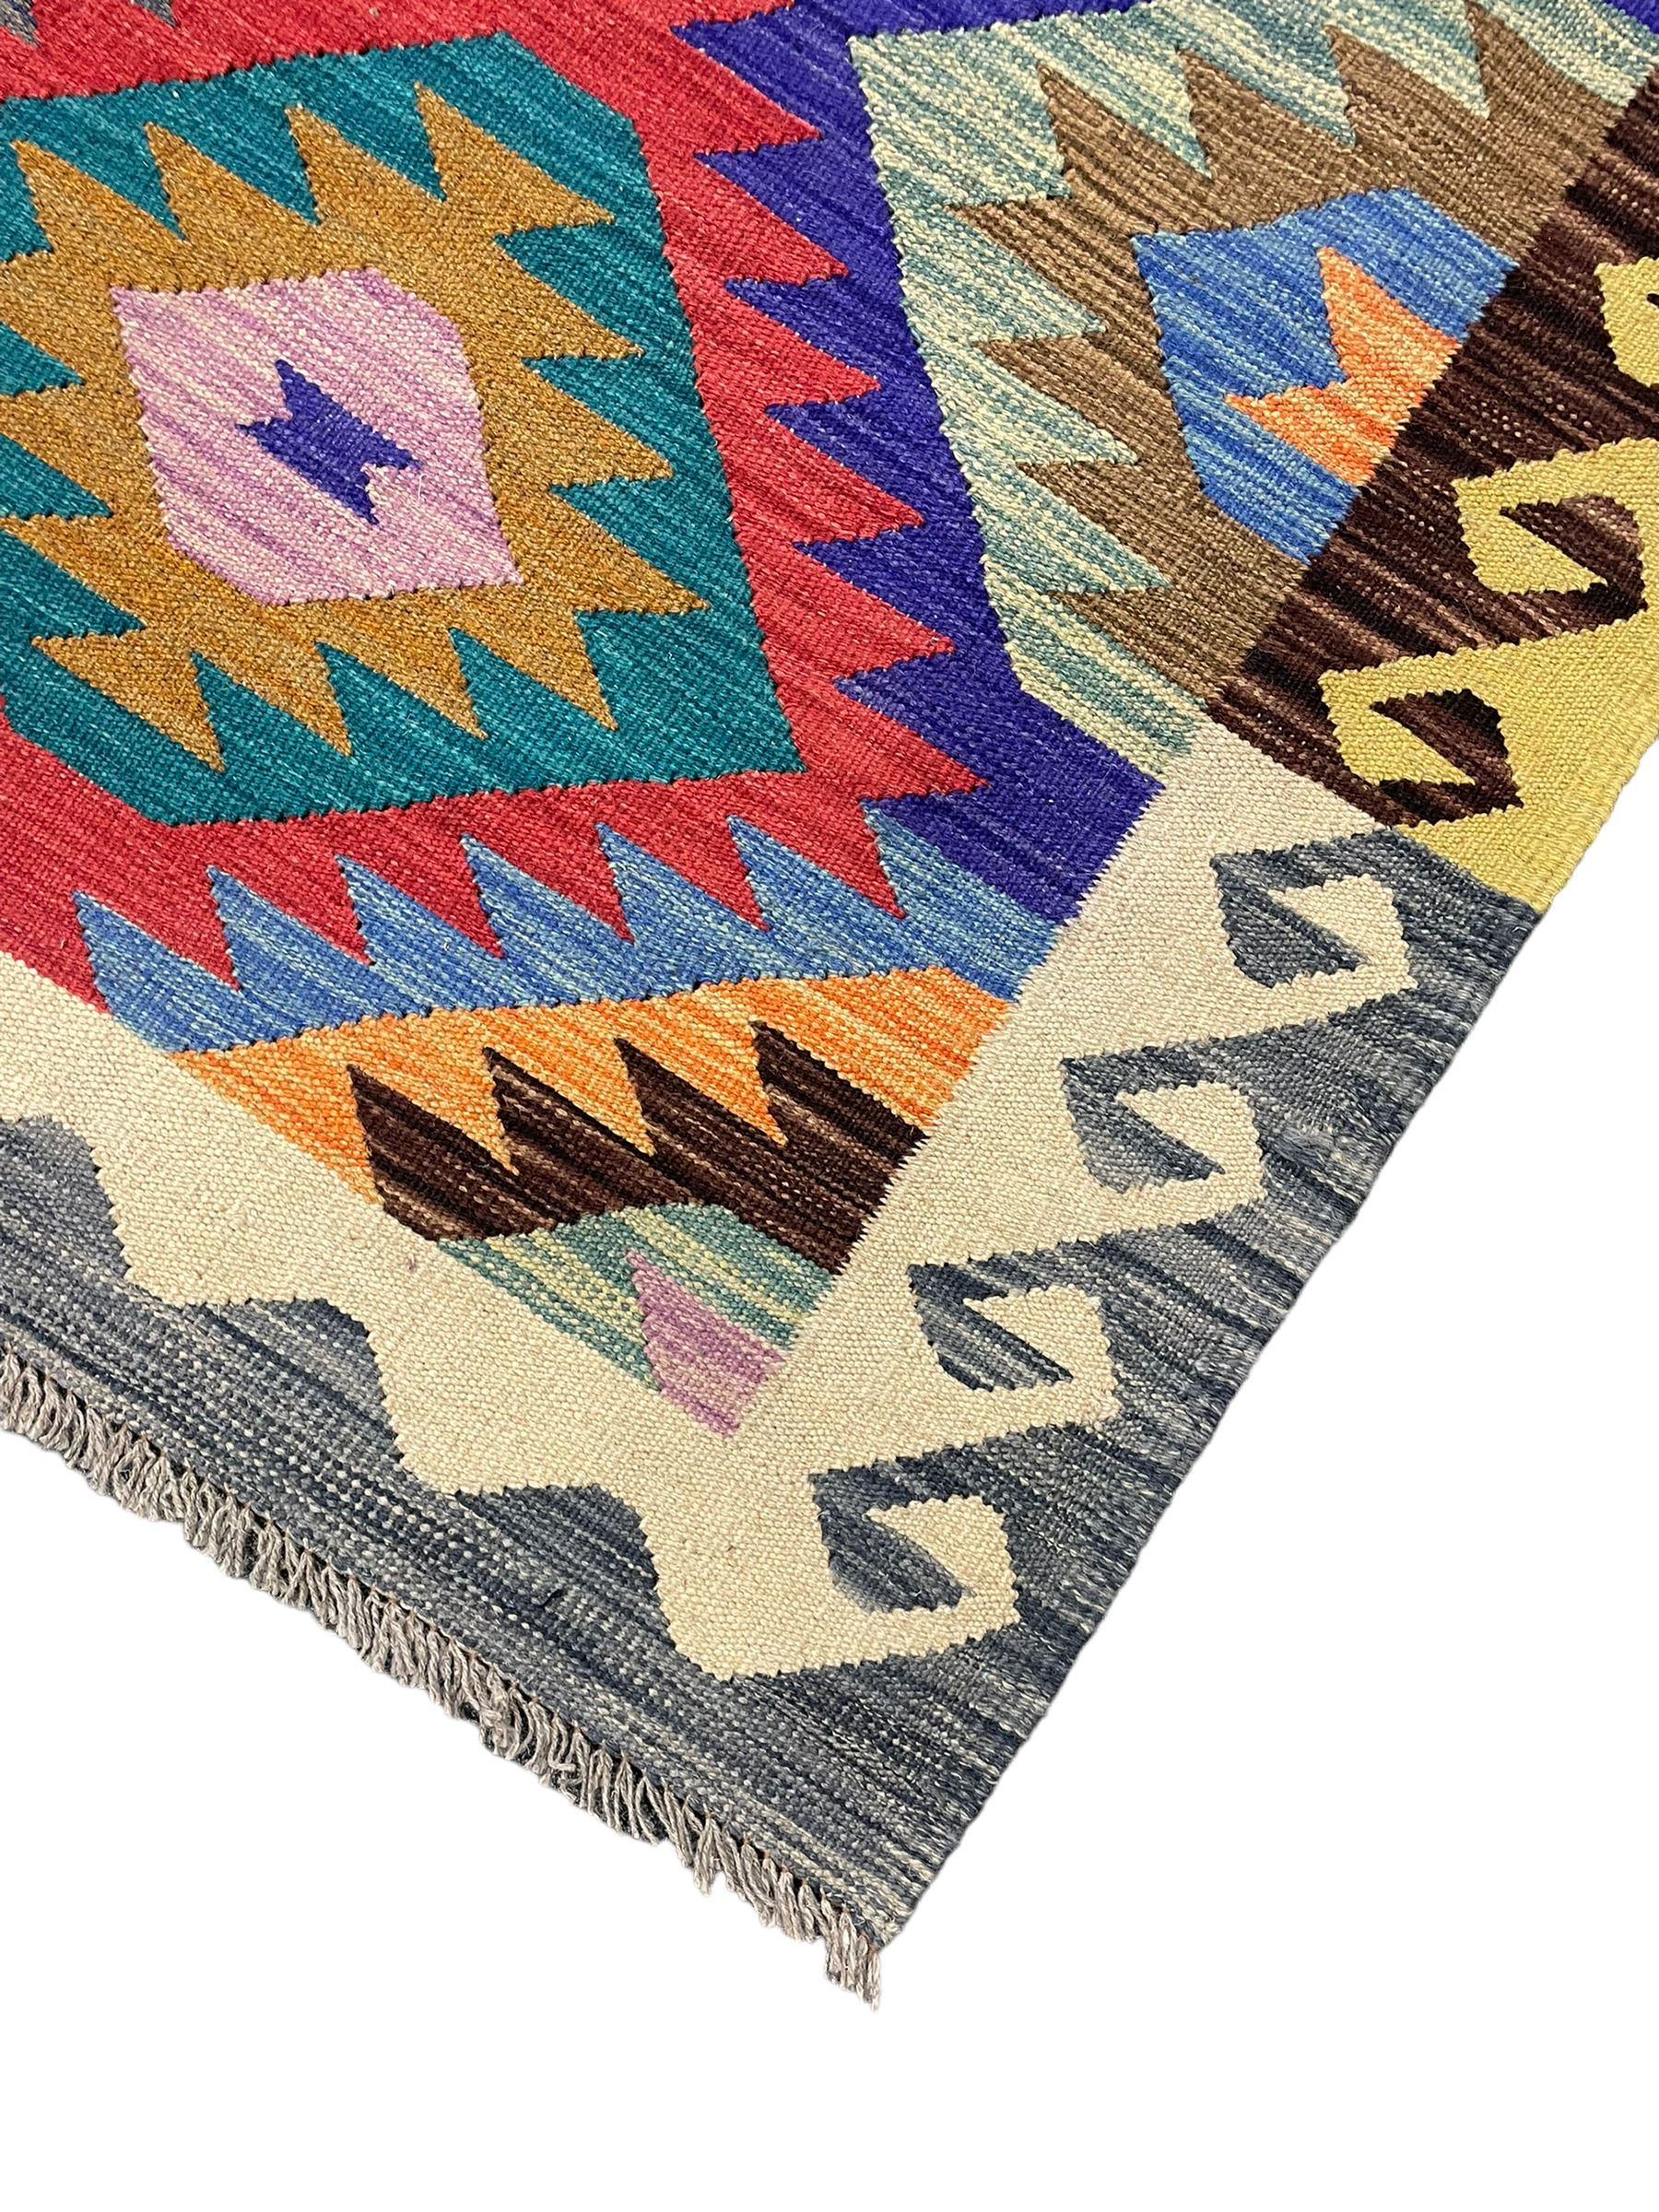 Anatolian Turkish Kilim rug - Image 2 of 5